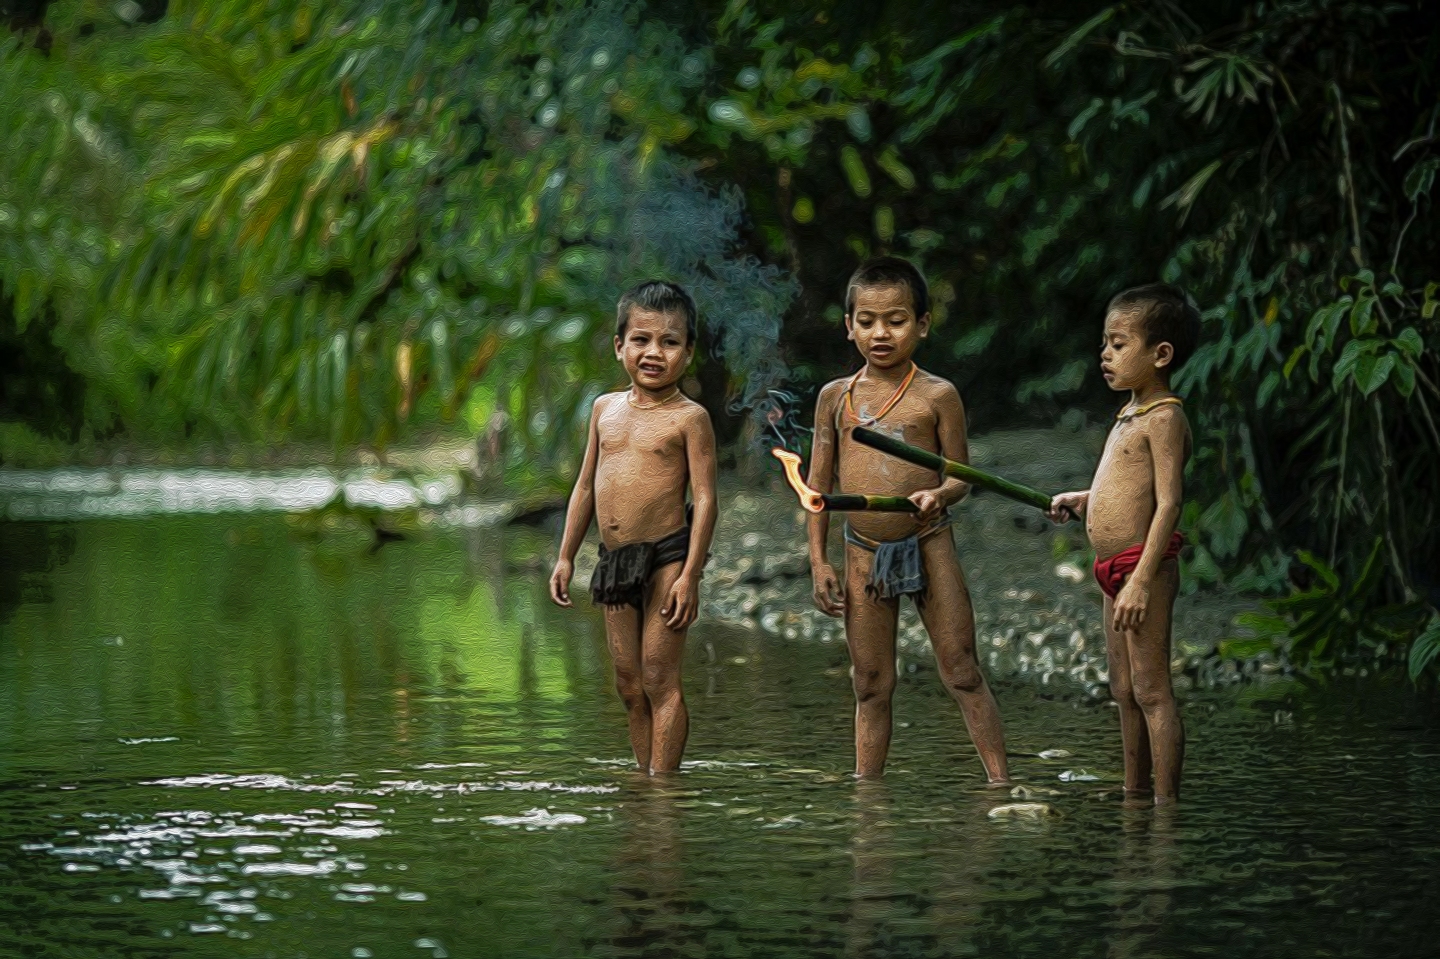 Негритята купаются. Дети диких племен Амазонии. Джунгли для детей. Купание детей в диких племенах.